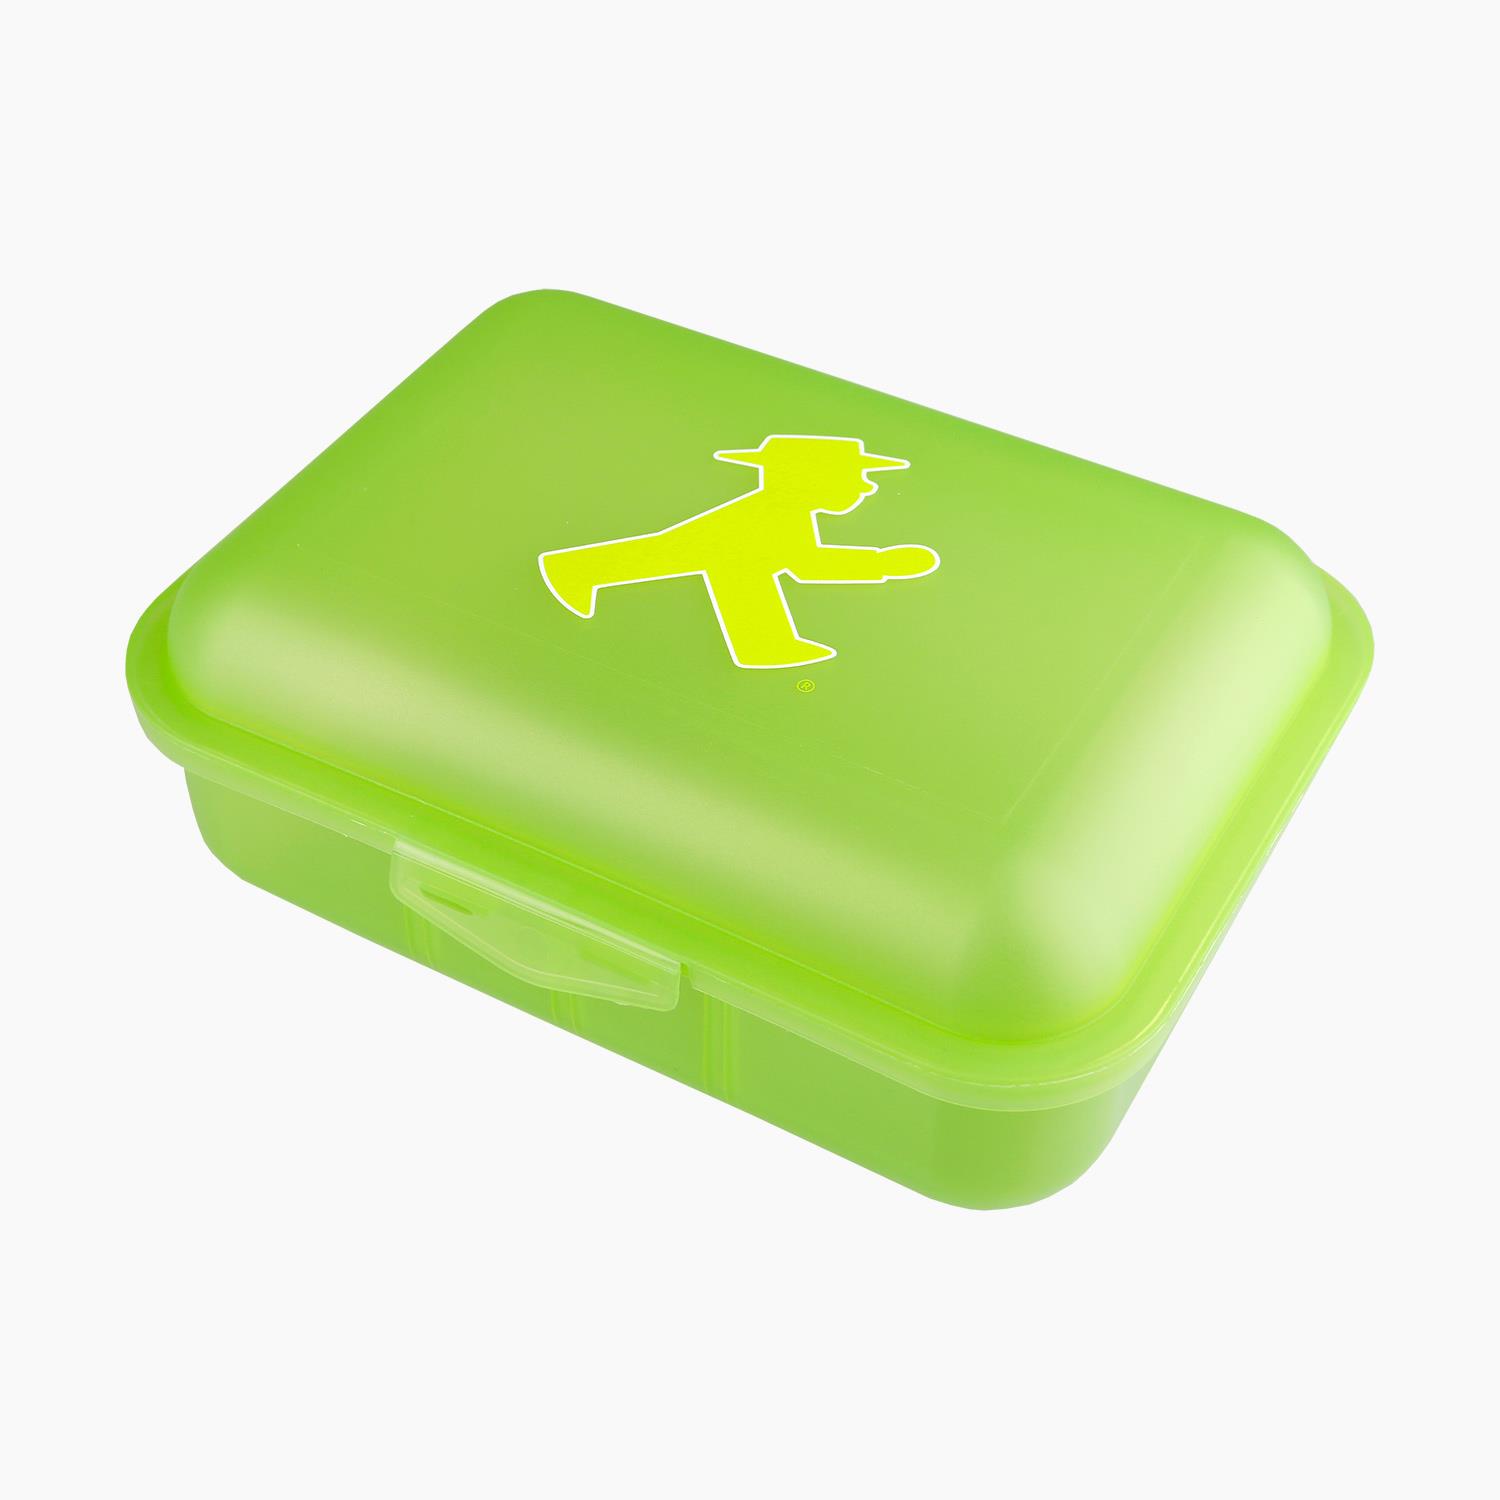 PAUSIERER green/ Lunch Box